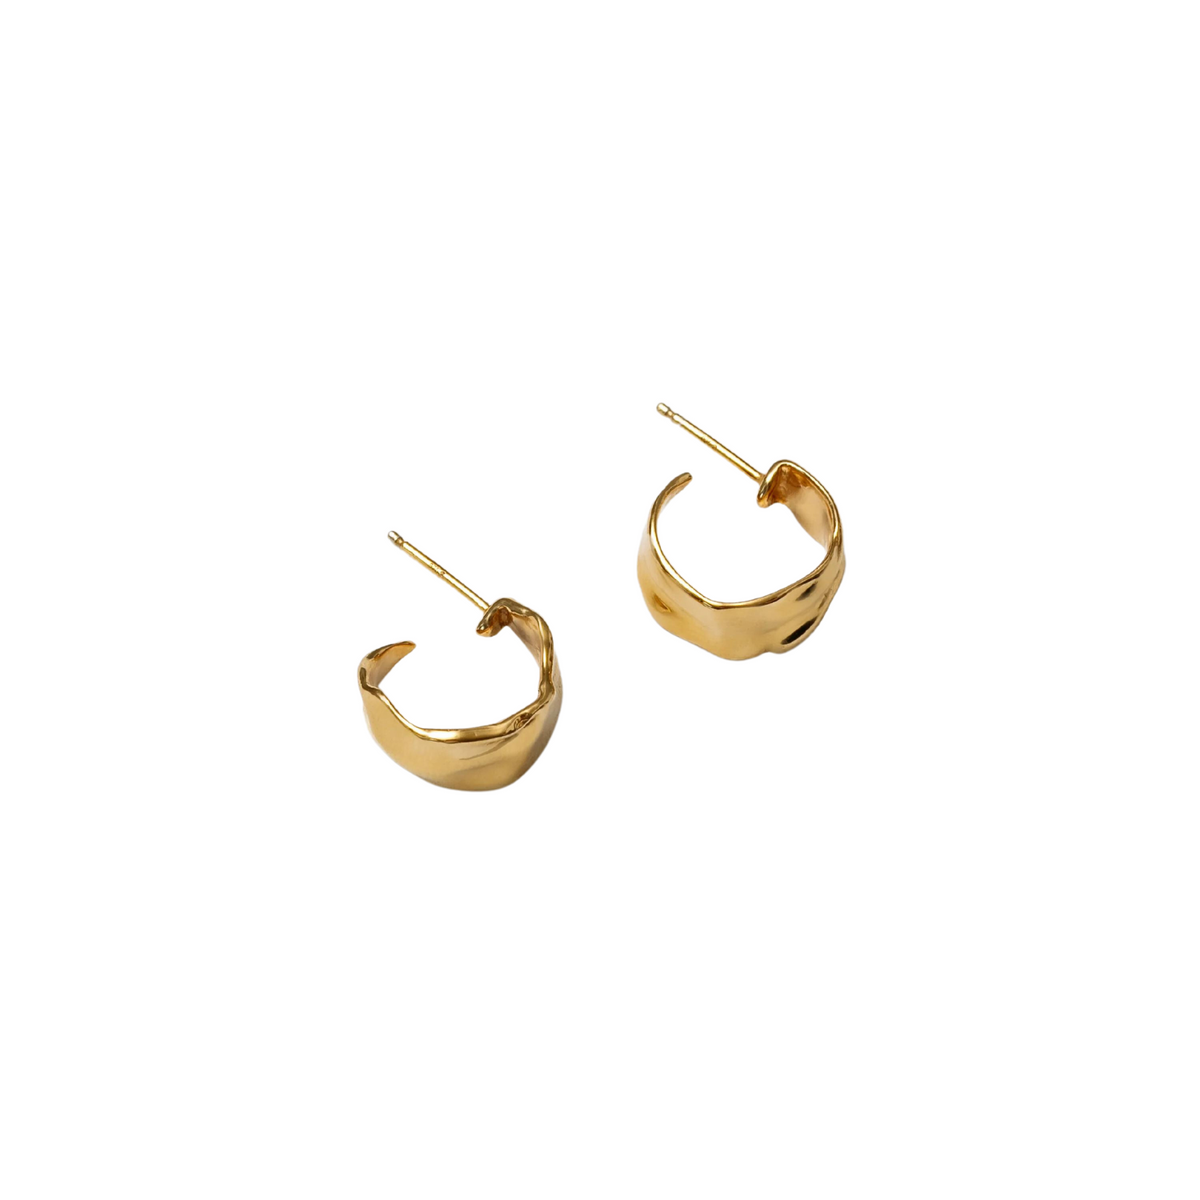 SMALL CIARA EARRINGS - GOLD